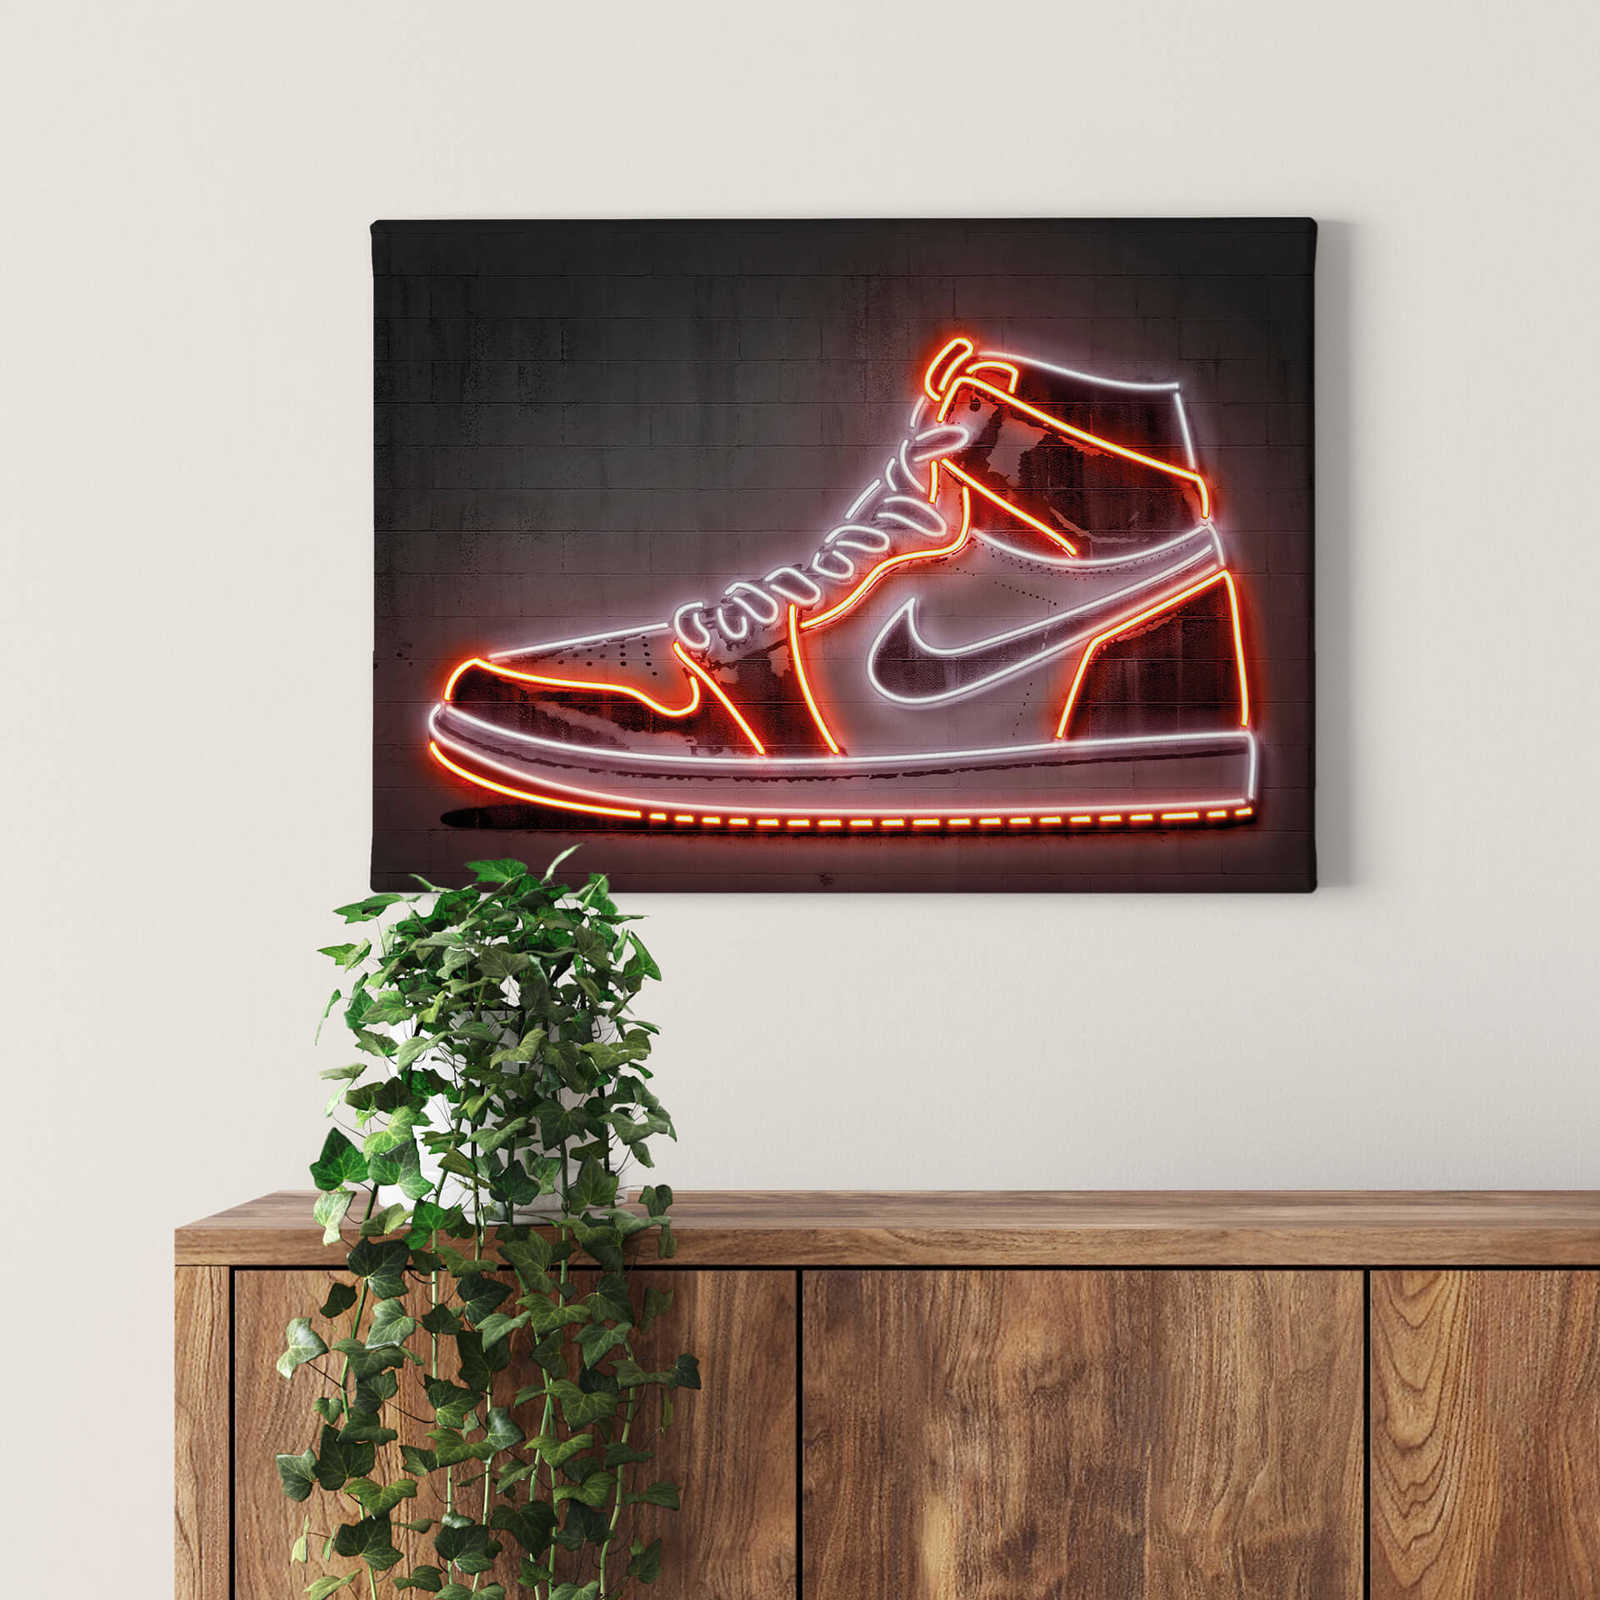             Tableau sur toile néon "Sneaker" de Mielu - 0,70 m x 0,50 m
        